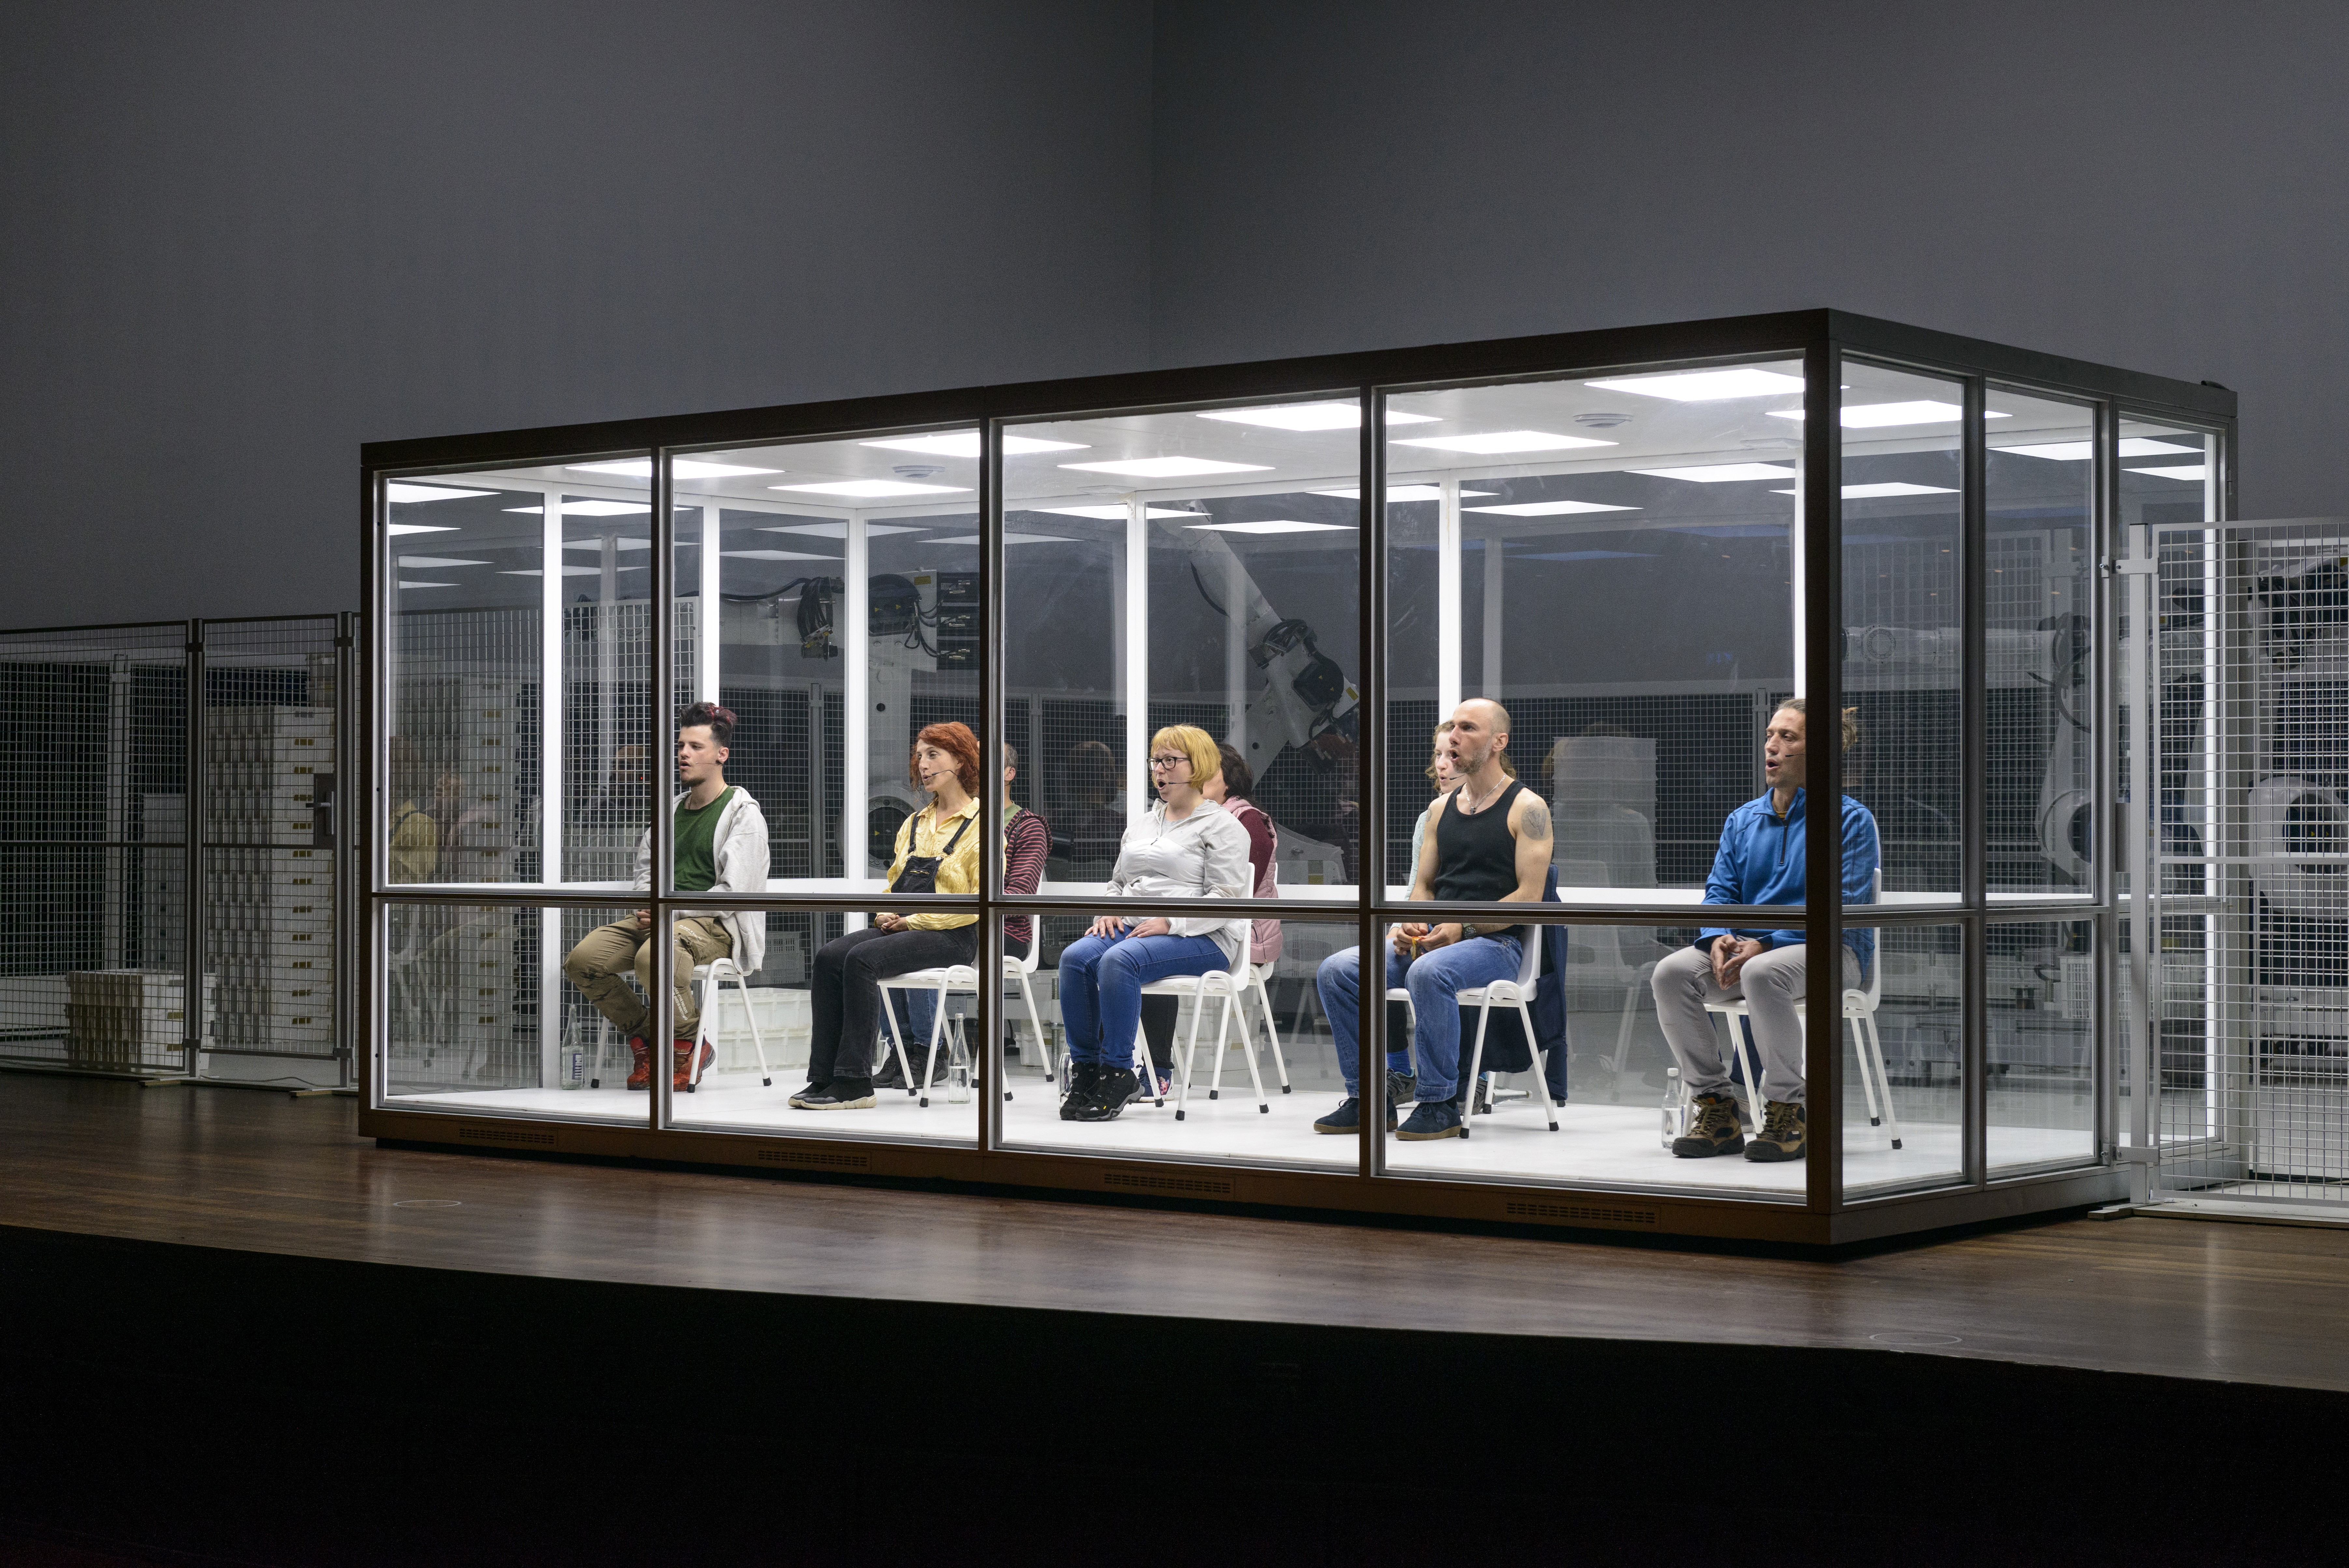 Im Hintergrund weisse Wände und grosse weisse Roboter. Im Vordergrund eine grosse rechteckige Glasbox, in der 9 Personen auf weissen Stühlen sitzen und singen.